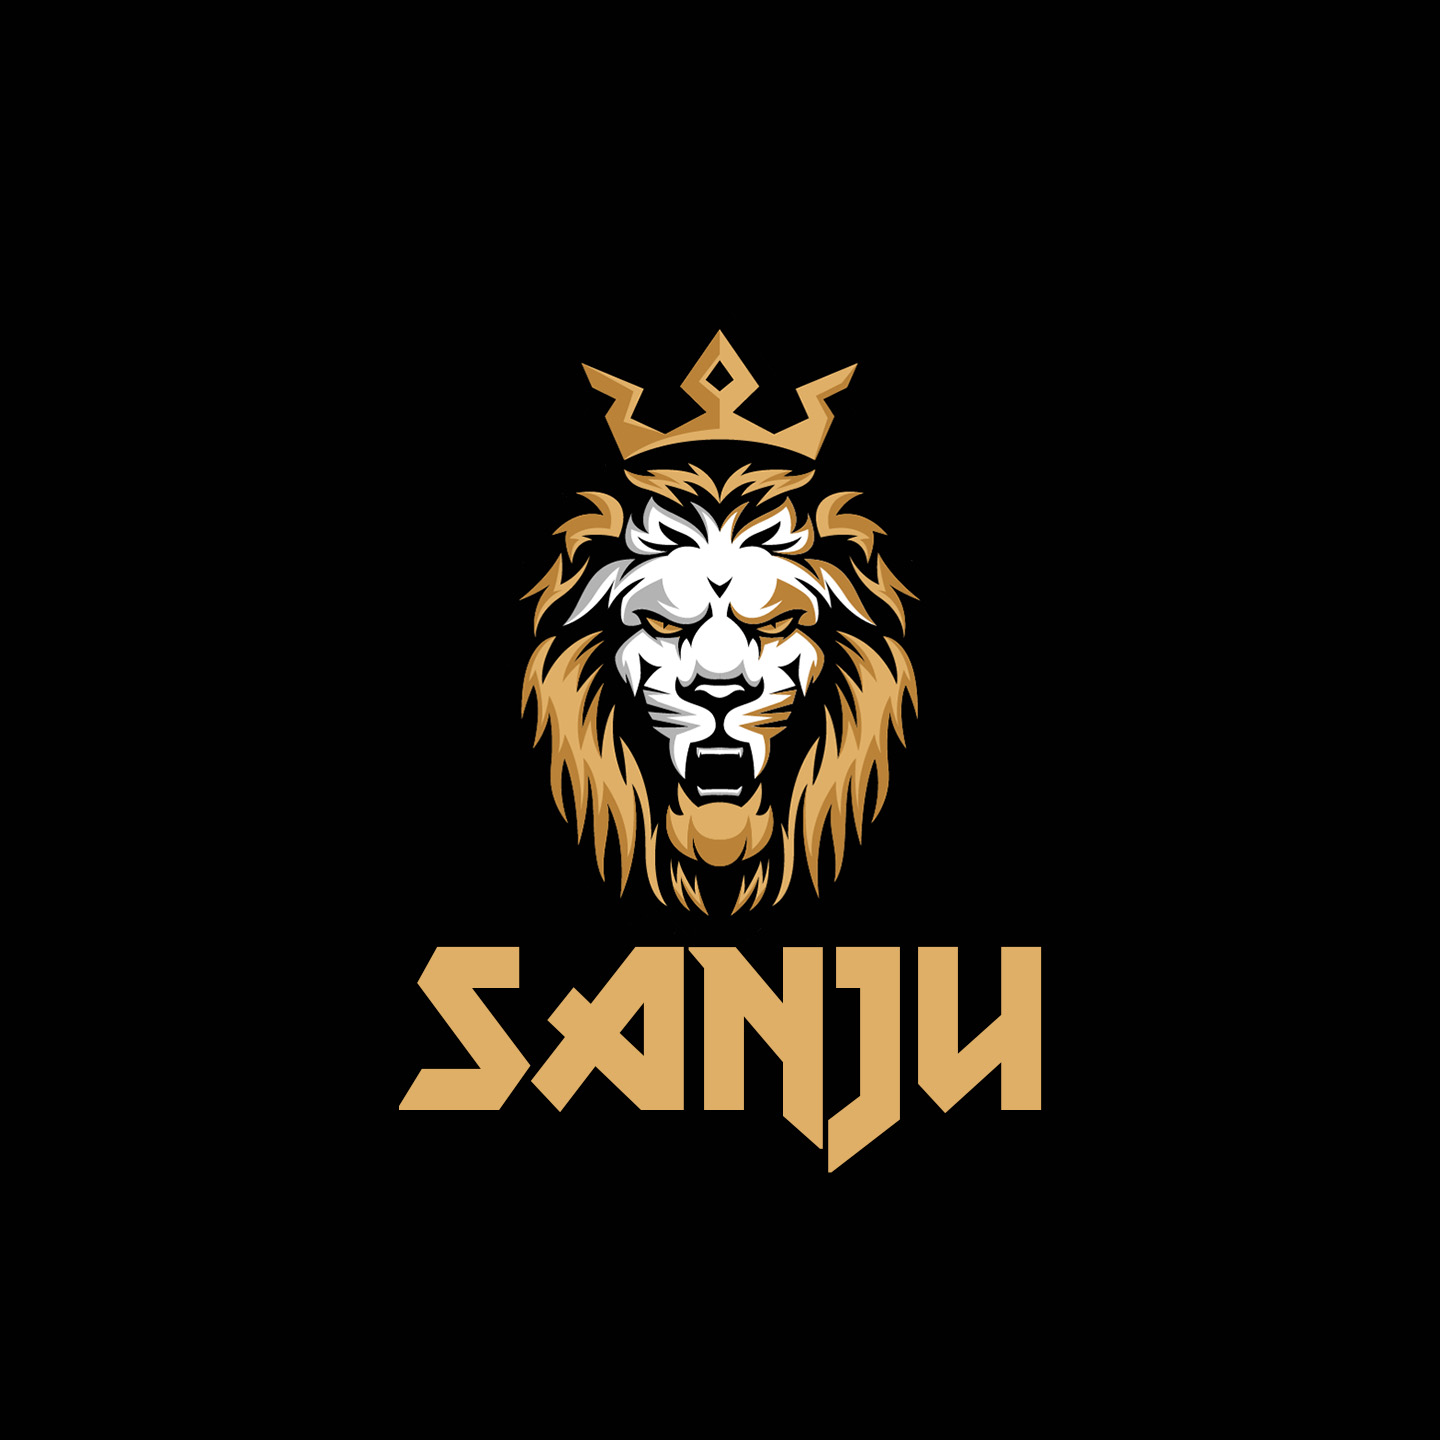 Kohl's Logo Brand Fashion, Sanju, png | Klipartz